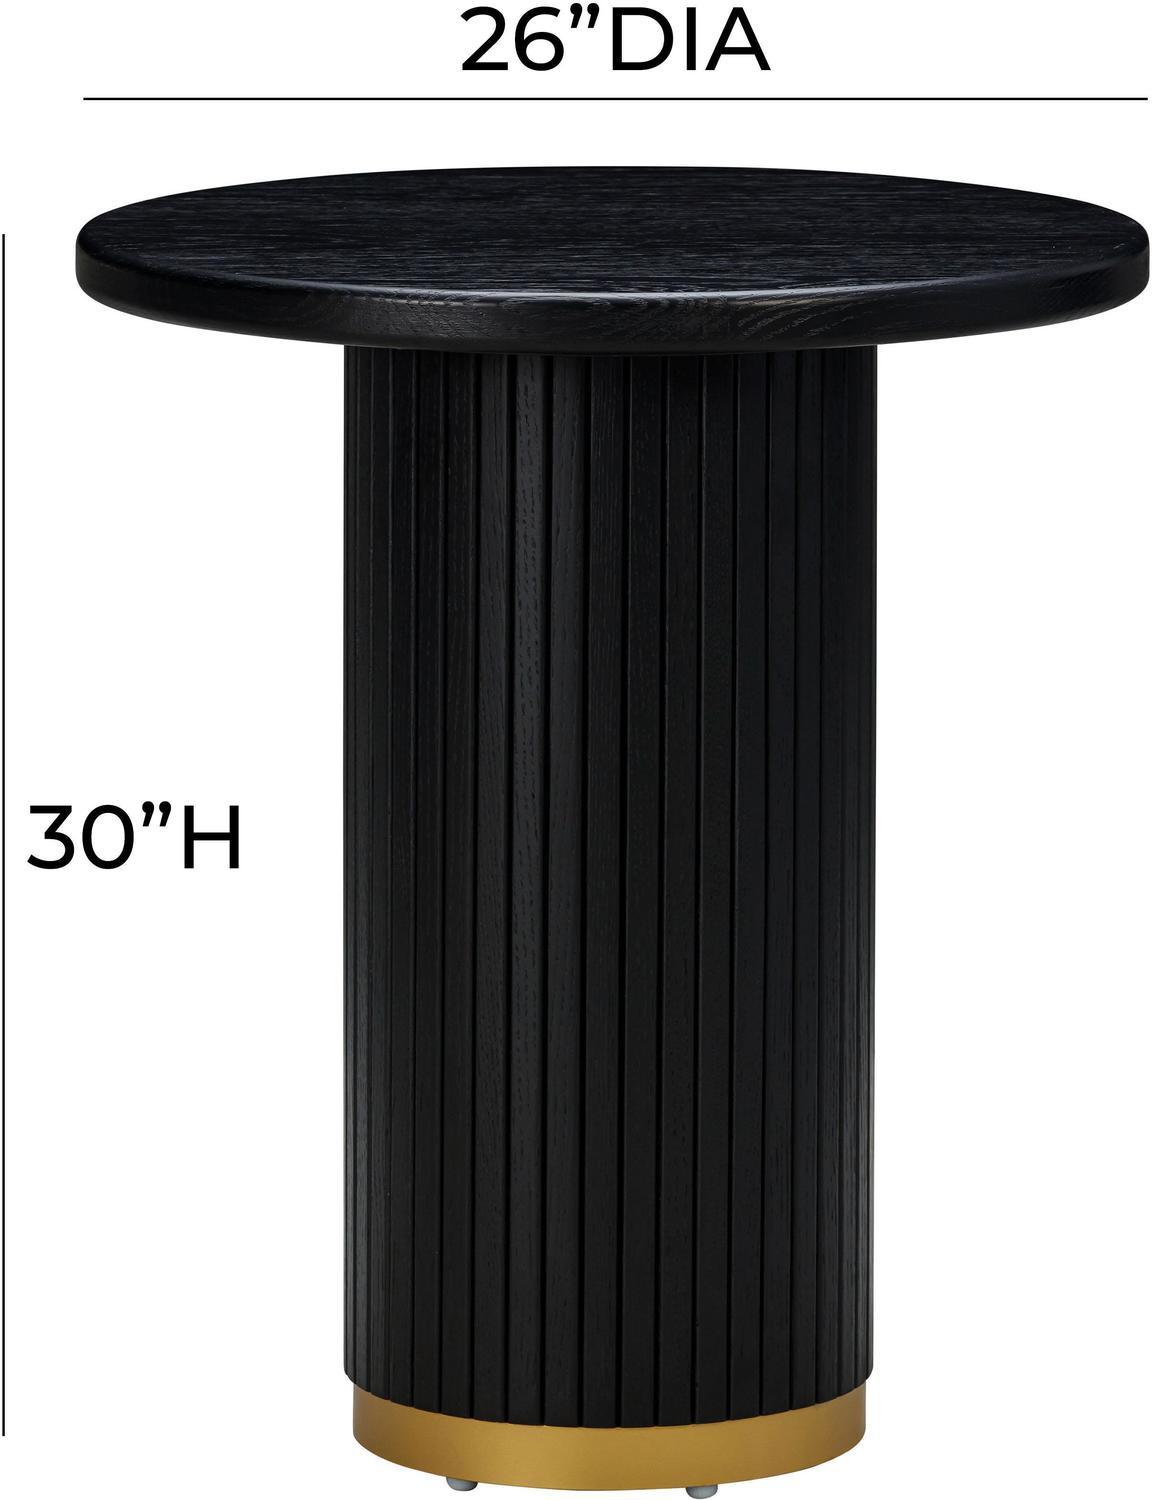 unique small coffee tables Contemporary Design Furniture Console Tables Black